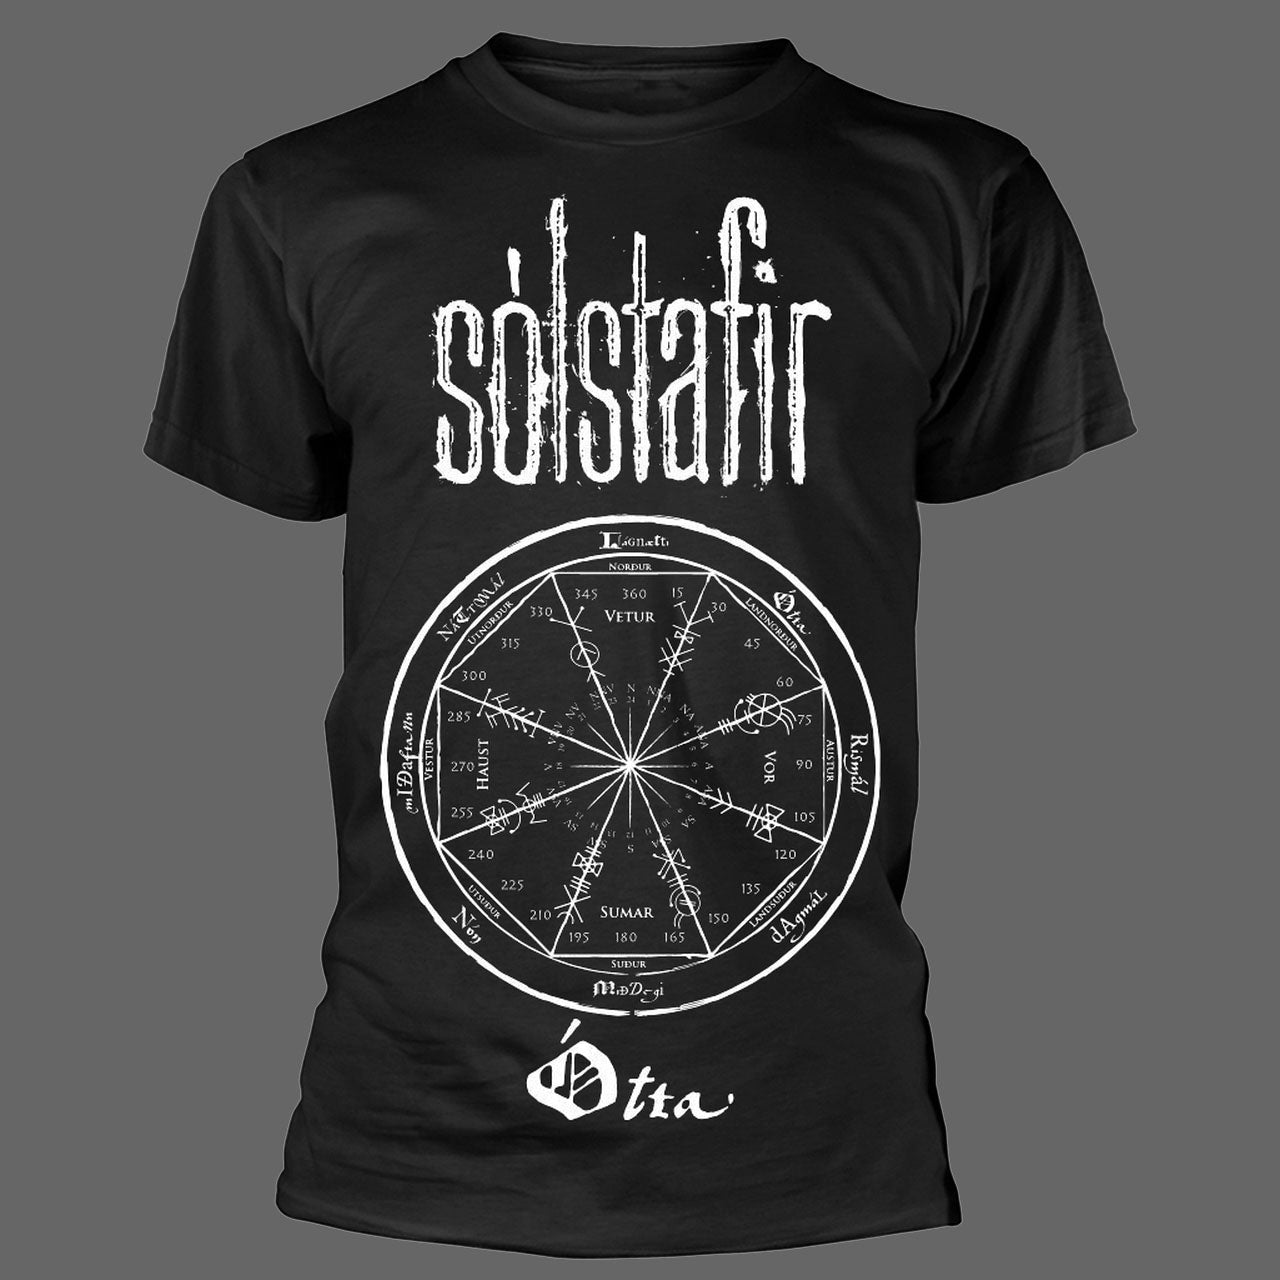 Solstafir - Otta / Eyktargram (T-Shirt)